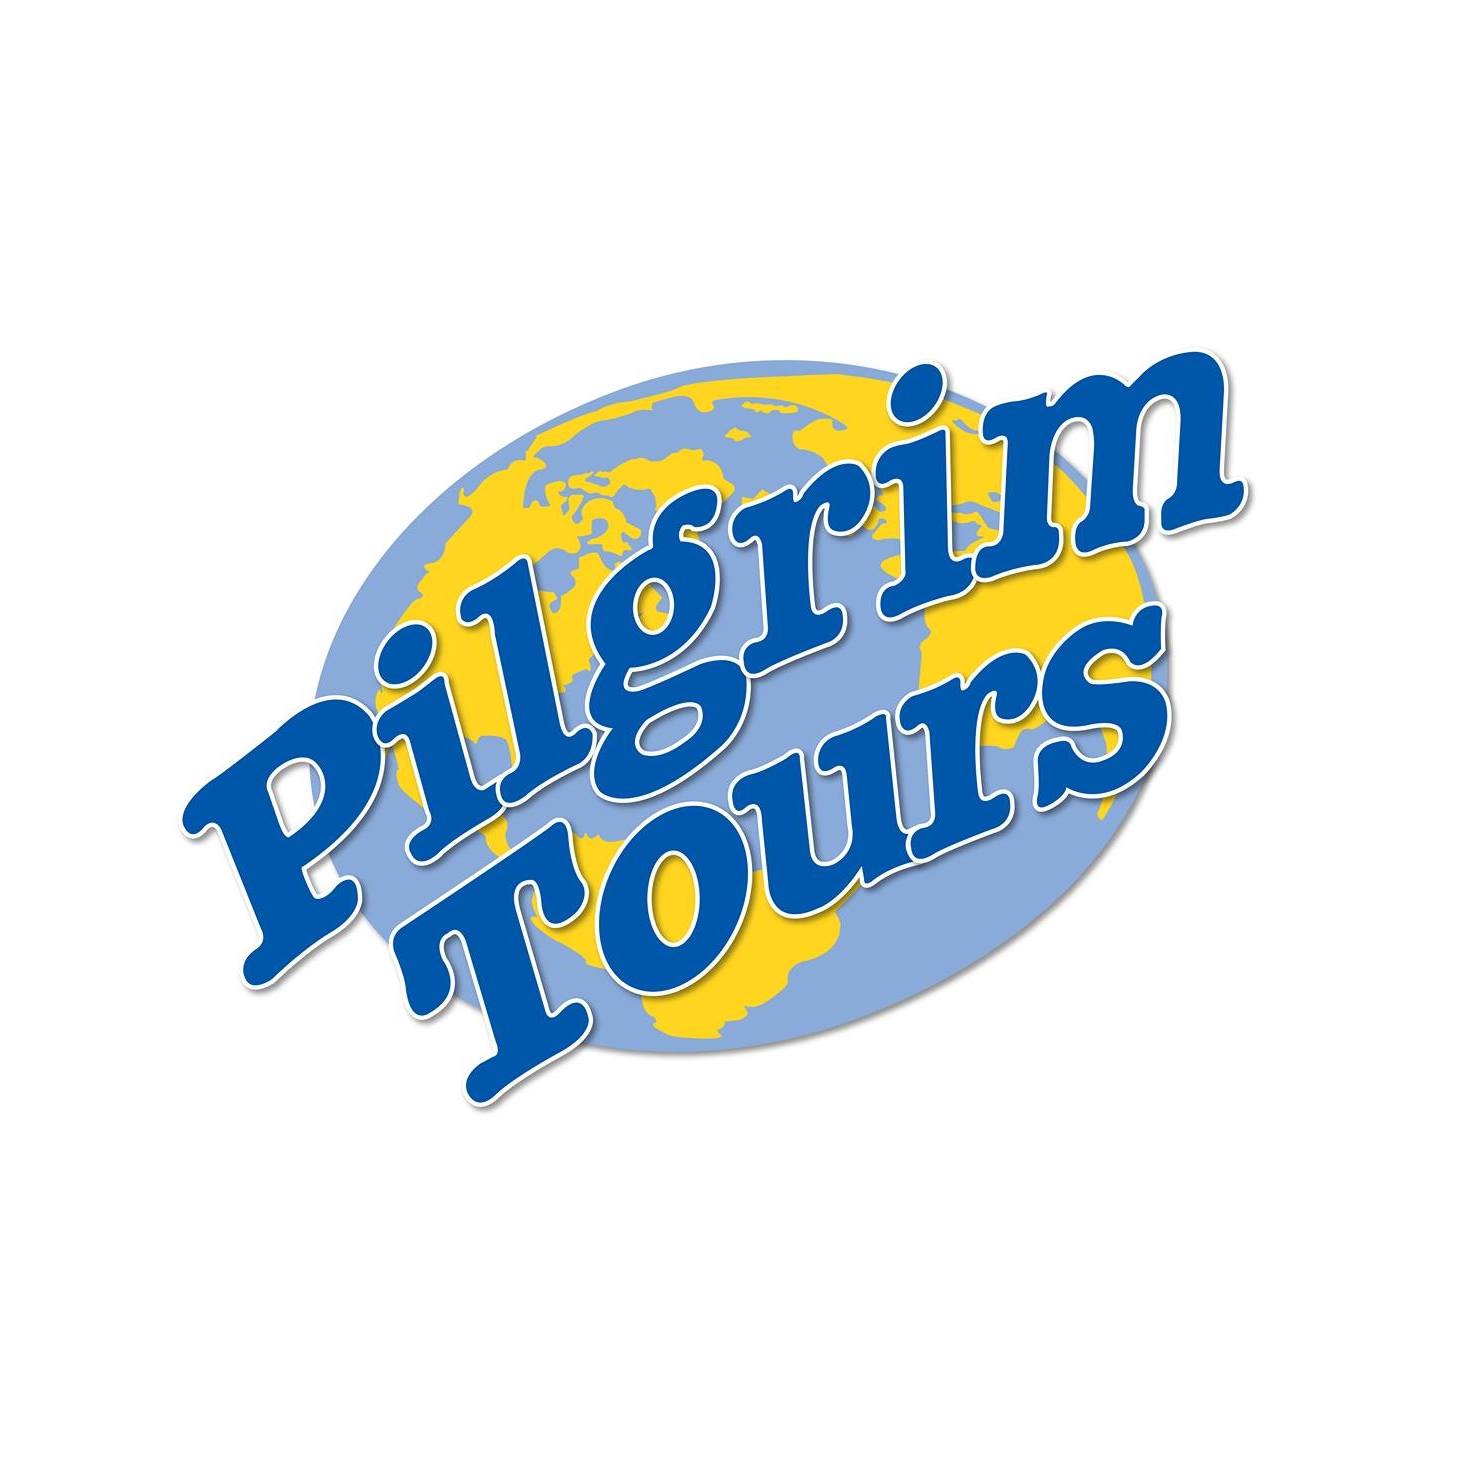 Business logo of Pilgrim Tours